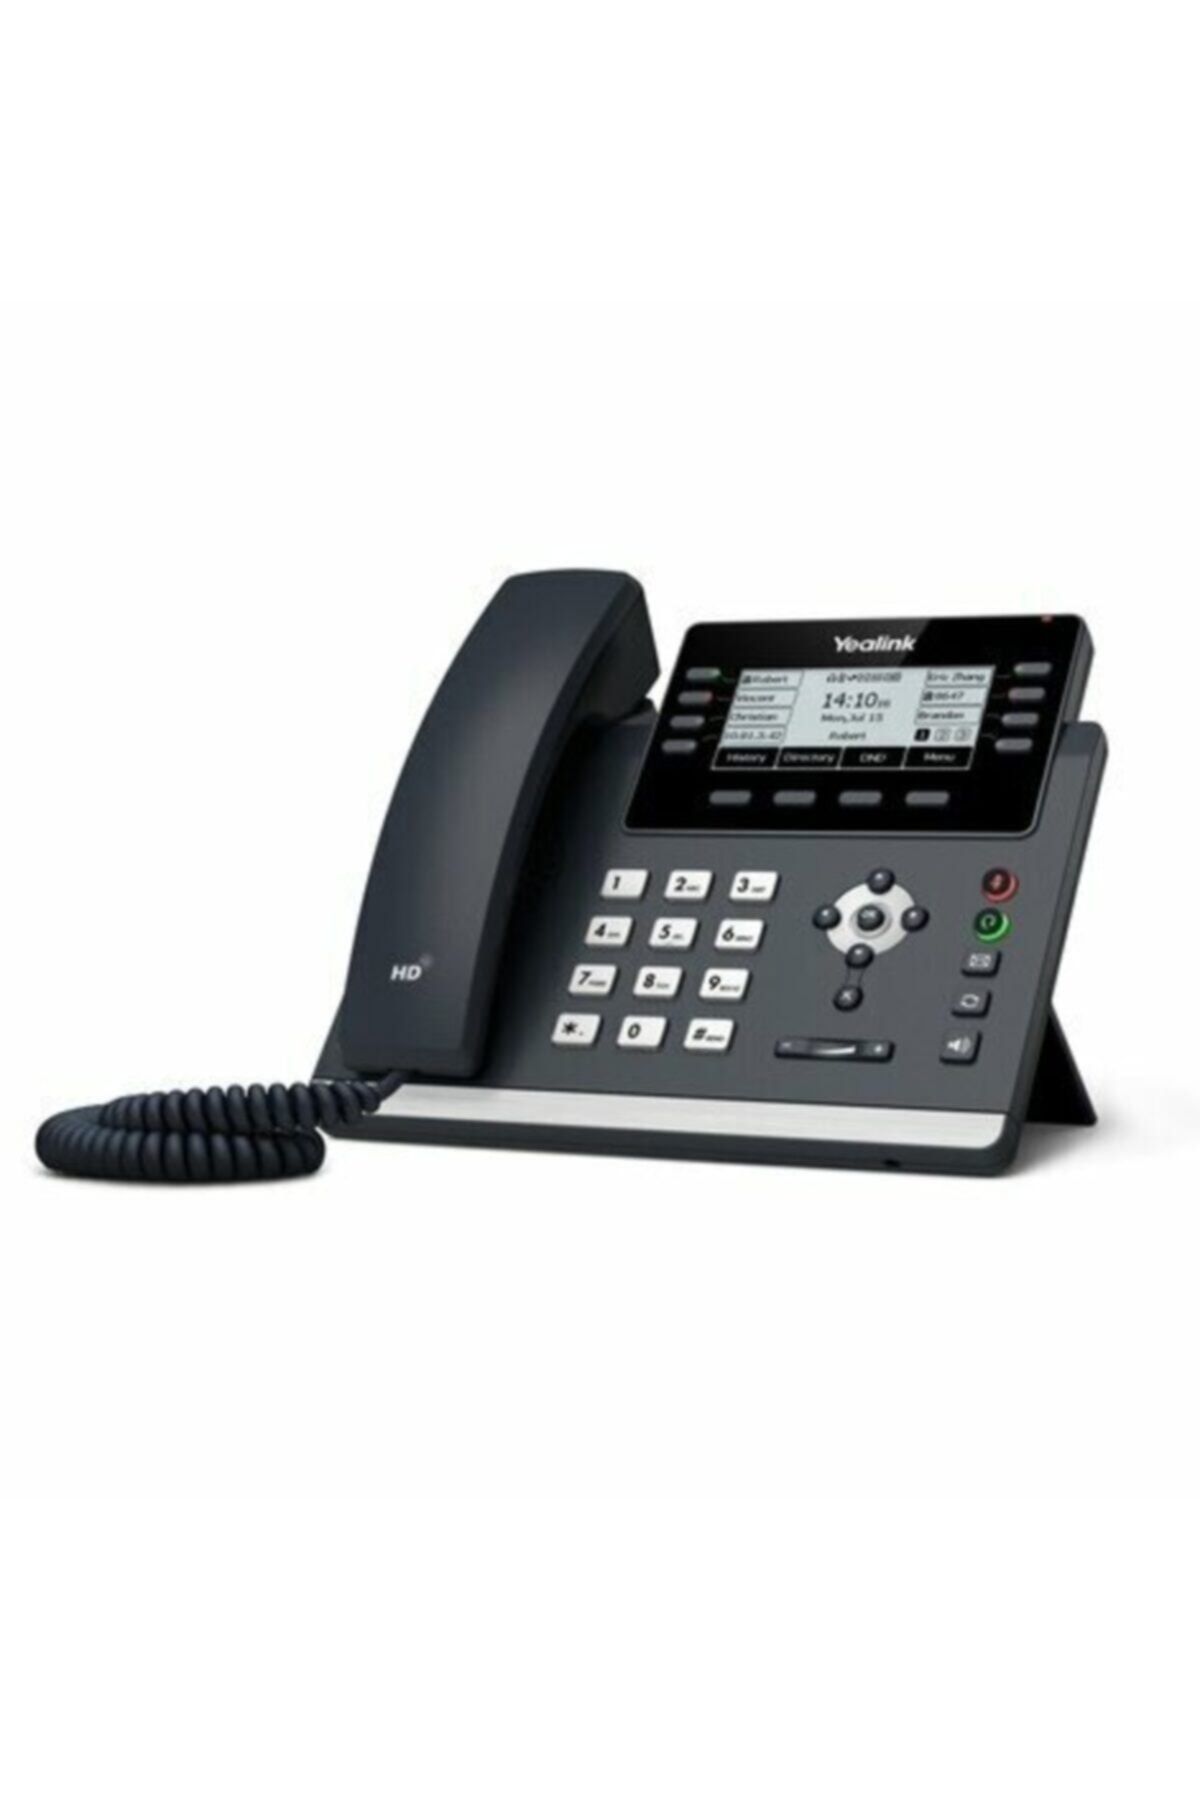 Yealink T43u Ip Telefon Masaüstü Telefon Poe Destekli Adaptörsüz Çağrı Merkezi Telefonu